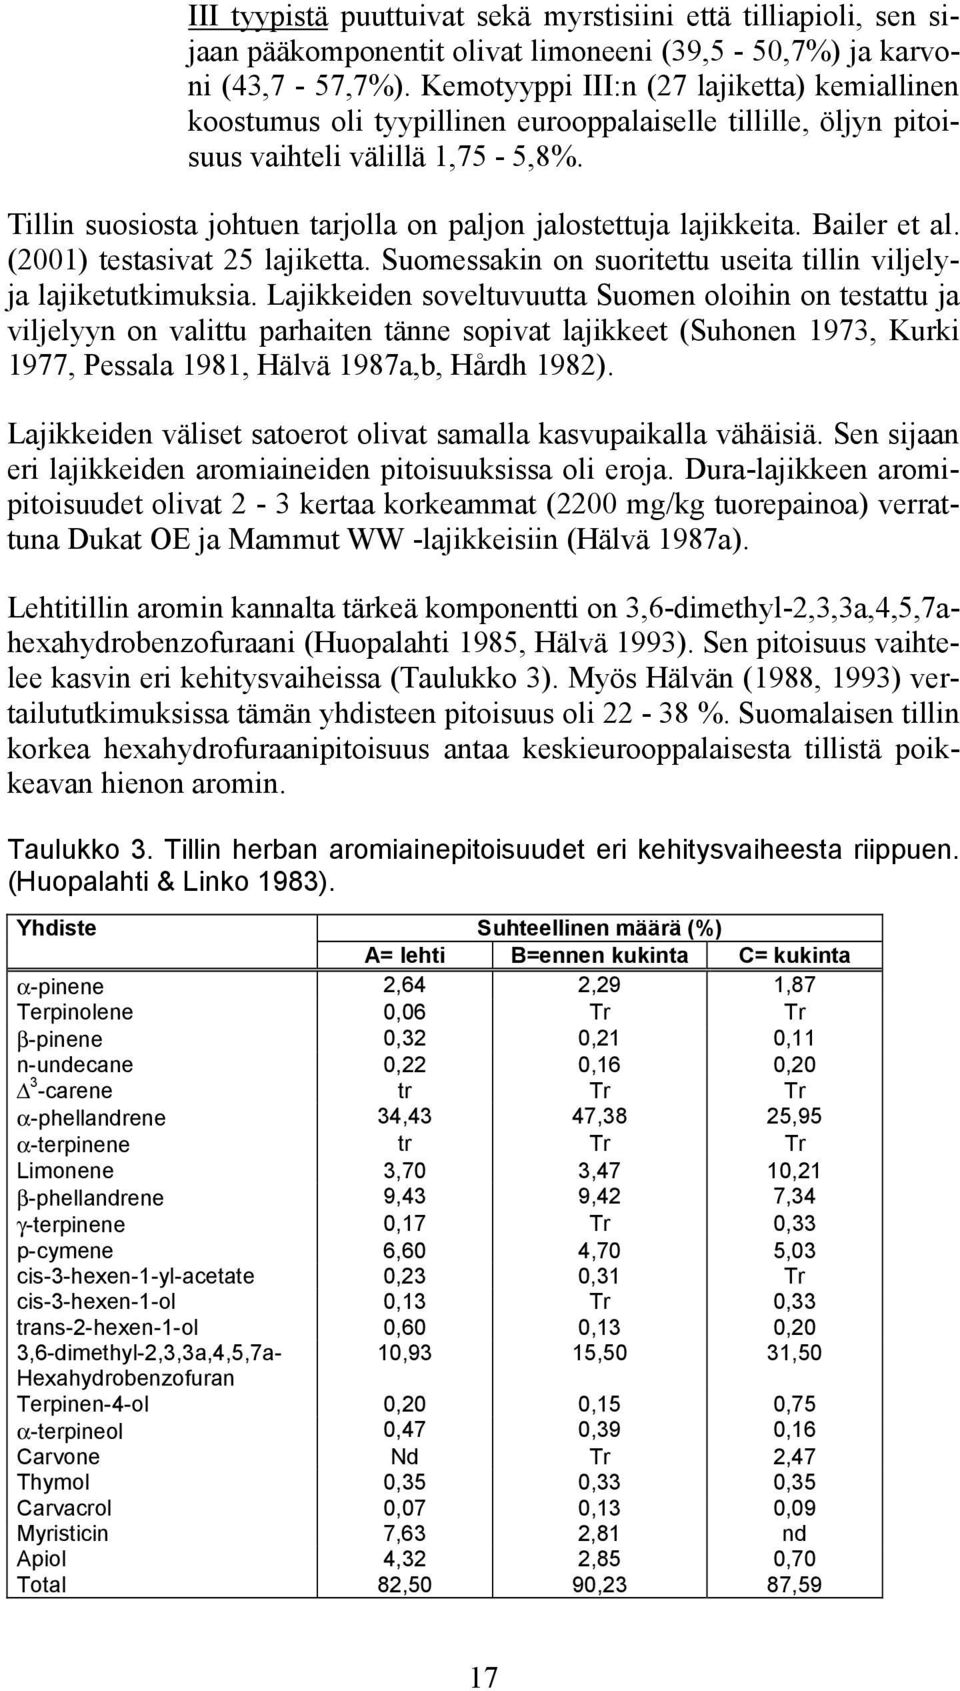 Tillin suosiosta johtuen tarjolla on paljon jalostettuja lajikkeita. Bailer et al. (2001) testasivat 25 lajiketta. Suomessakin on suoritettu useita tillin viljelyja lajiketutkimuksia.